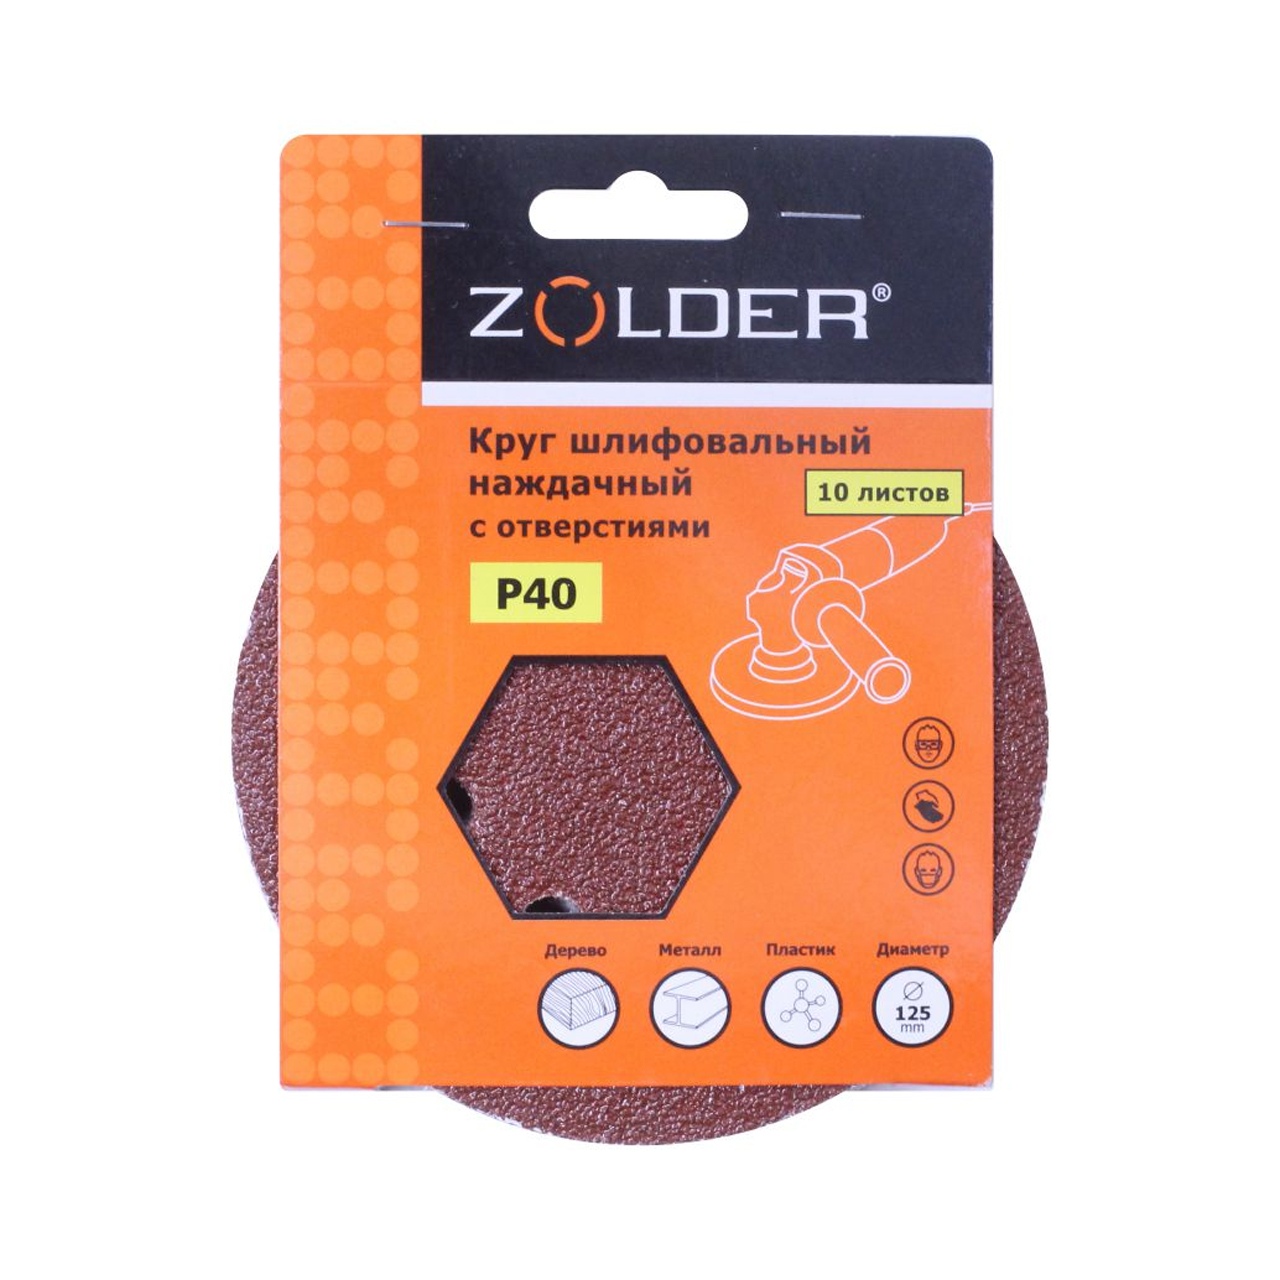 ZOLDER Круги шлифовальные наждачные 10шт, P40, 125 мм / Z-108-40 наждачные круги шлифовальные zolder